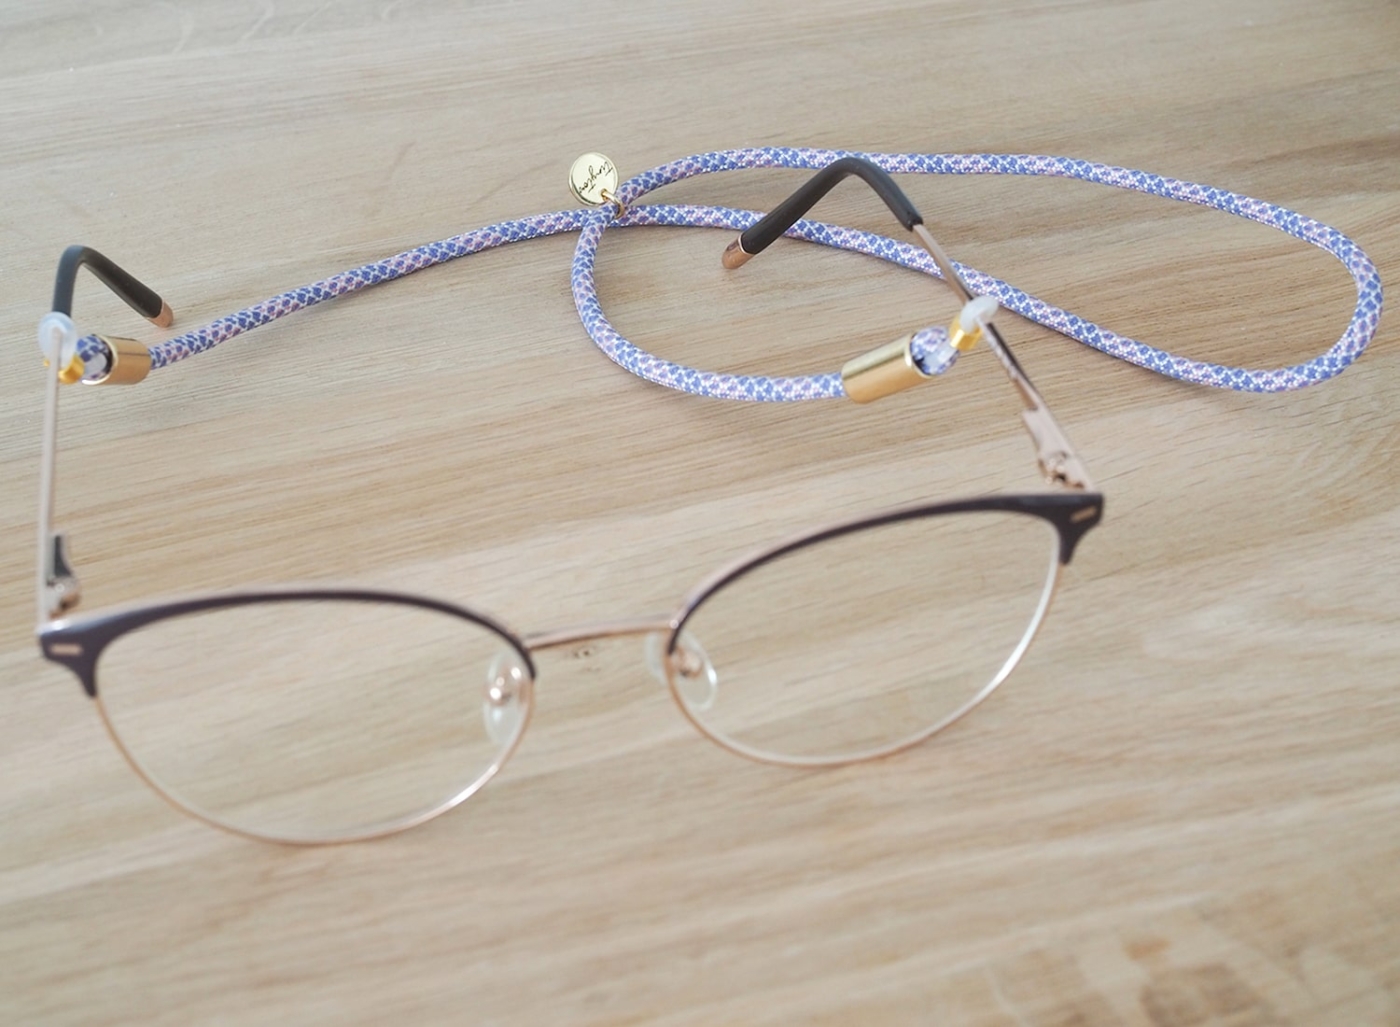 Sportliches Brillenband mit Muster und goldenen Details